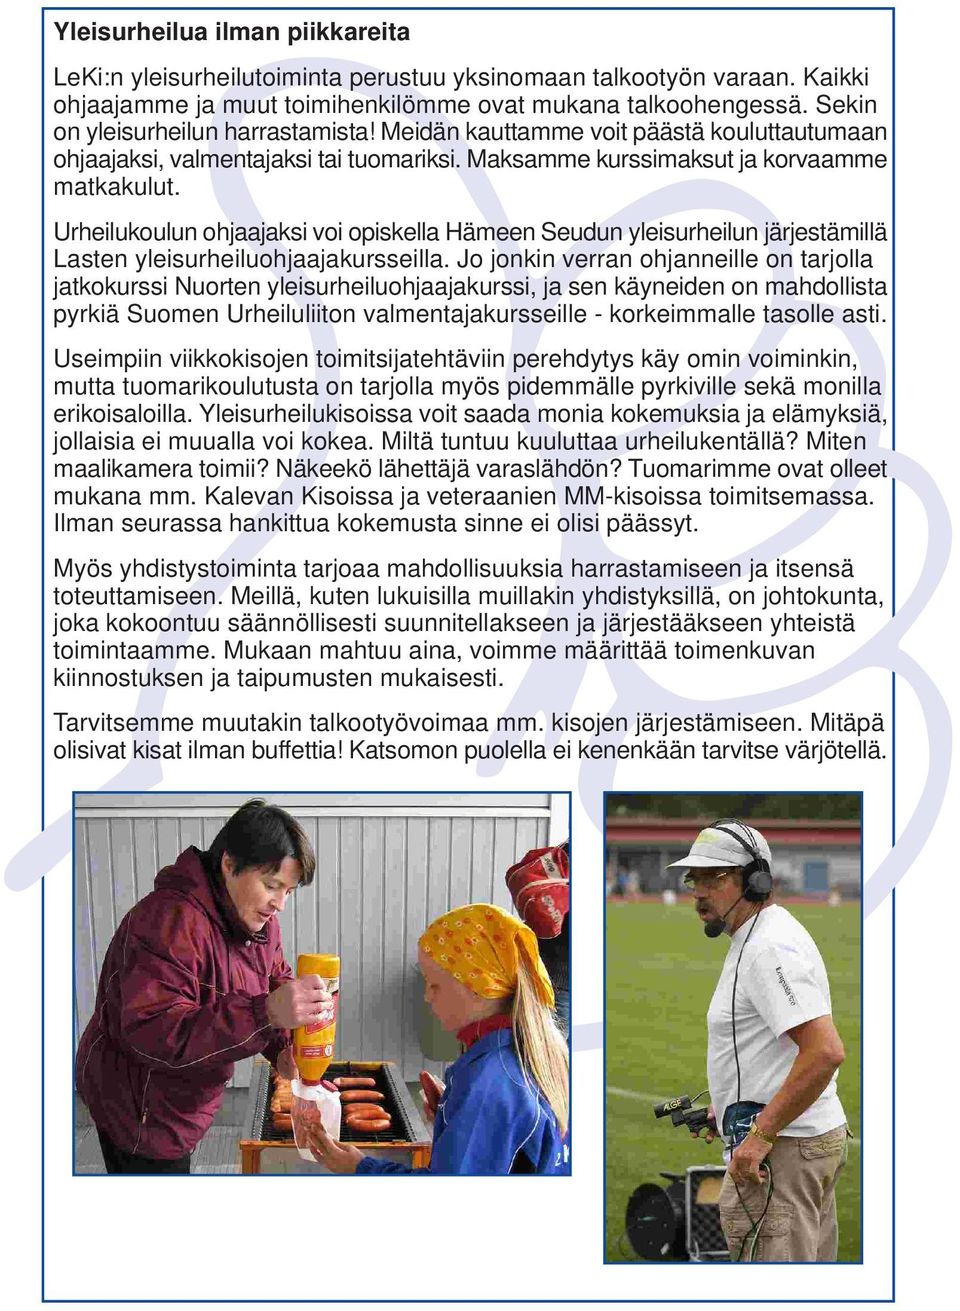 Urheilukoulun ohjaajaksi voi opiskella Hämeen Seudun yleisurheilun järjestämillä Lasten yleisurheiluohjaajakursseilla.